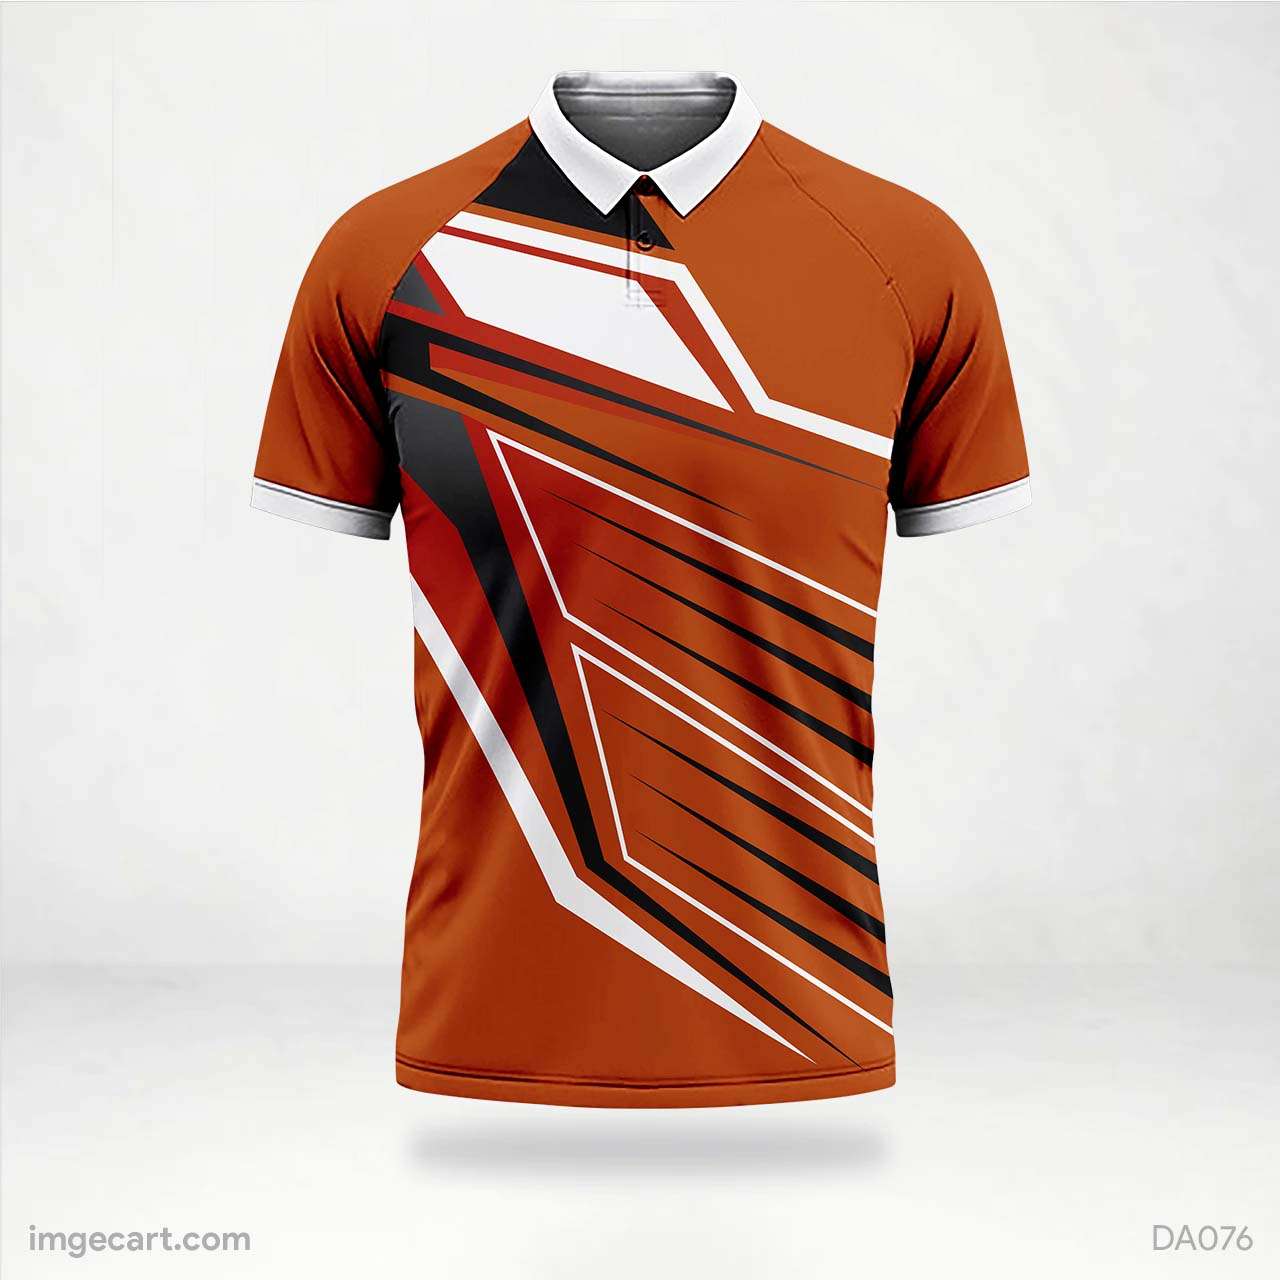 Cricket Jersey Design Orange with Pattern - imgecart